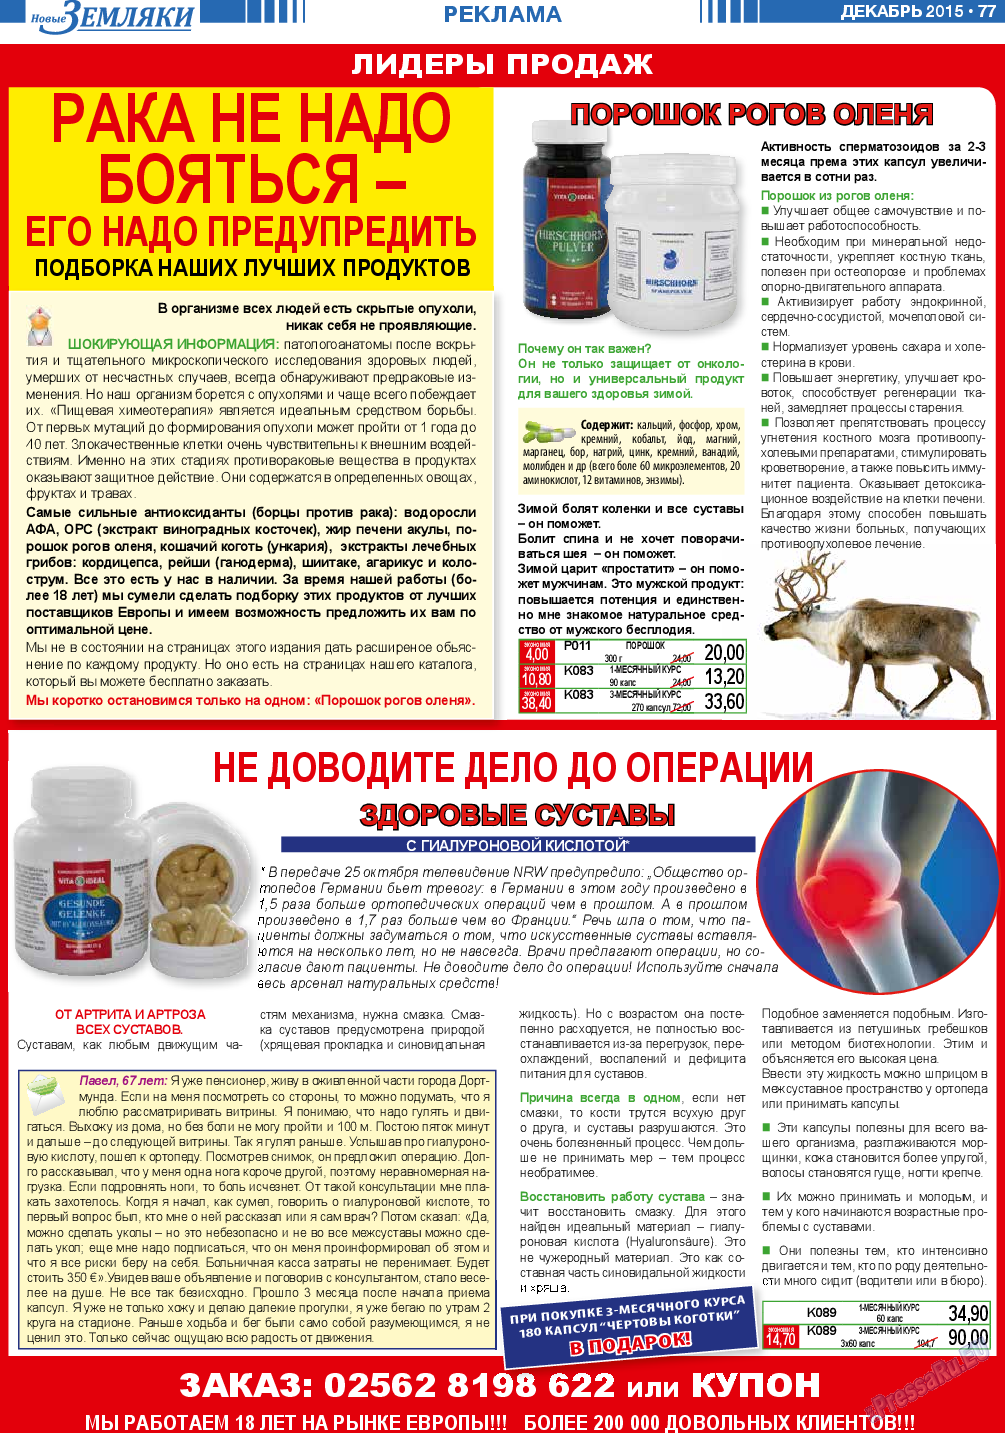 Новые Земляки, газета. 2015 №12 стр.77